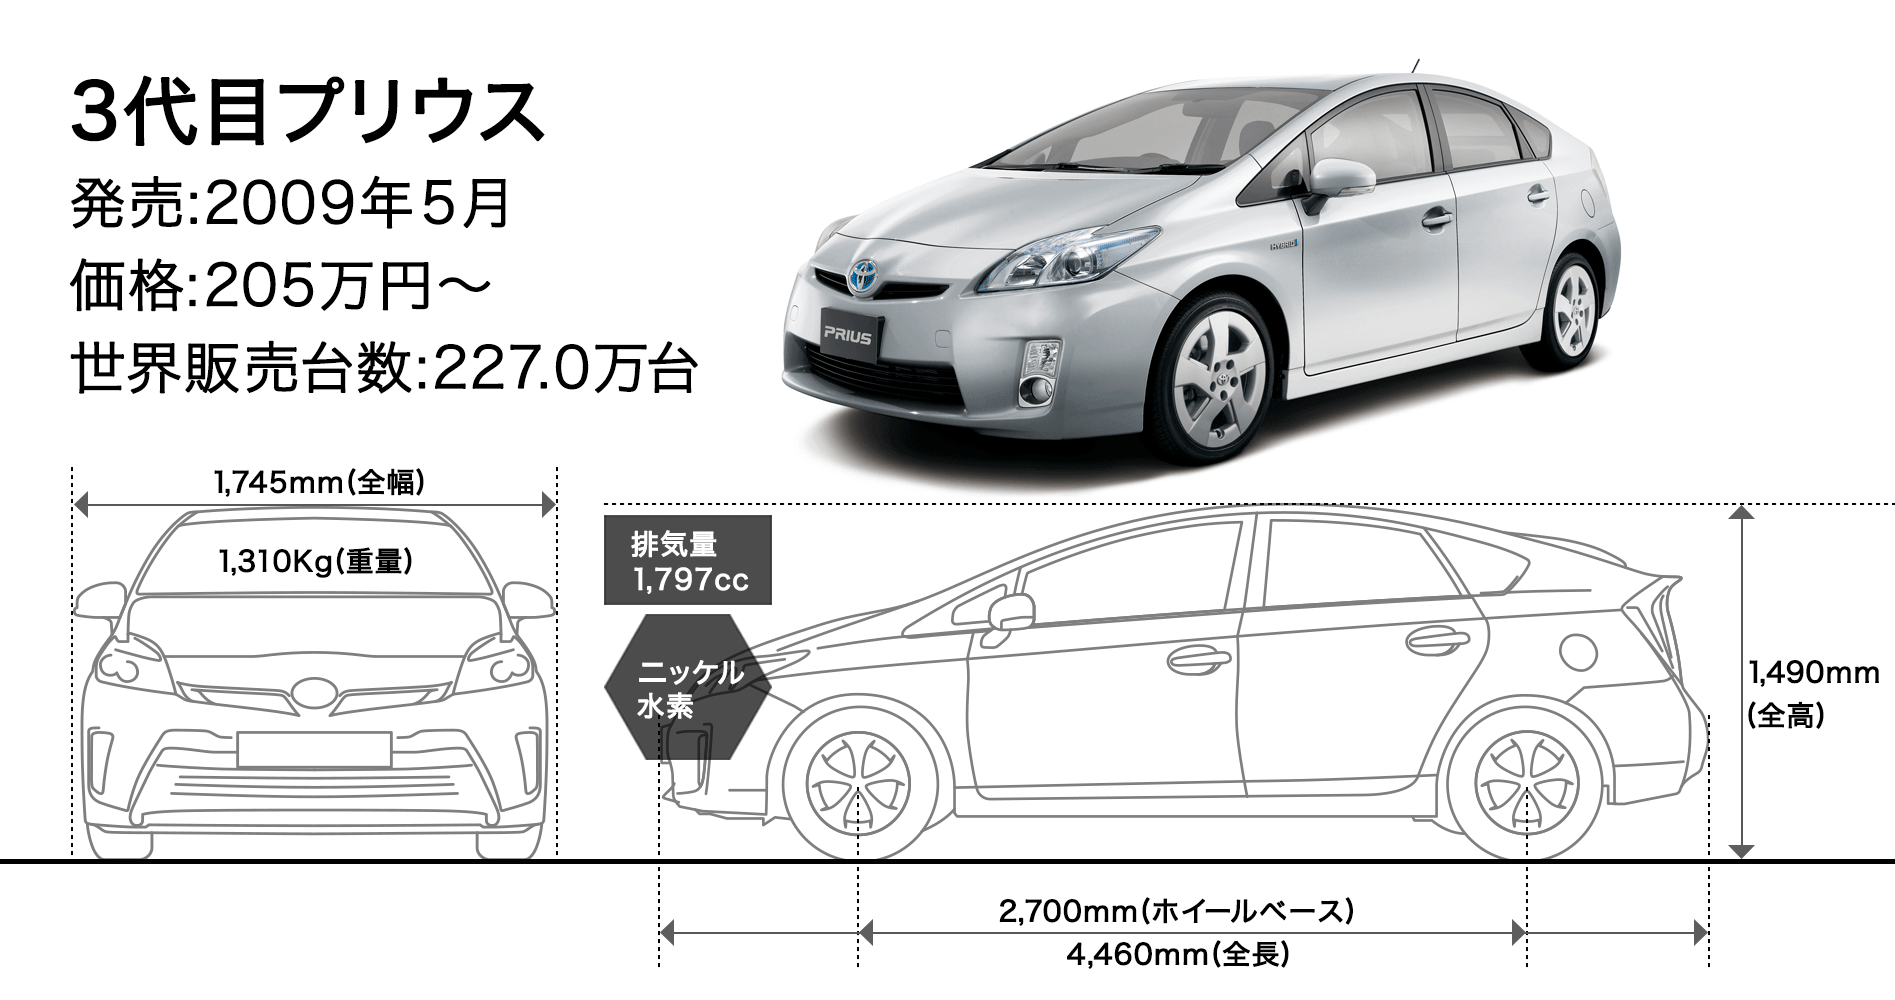 プリウス4代目vsライバル車 エコカー本命は 日本経済新聞